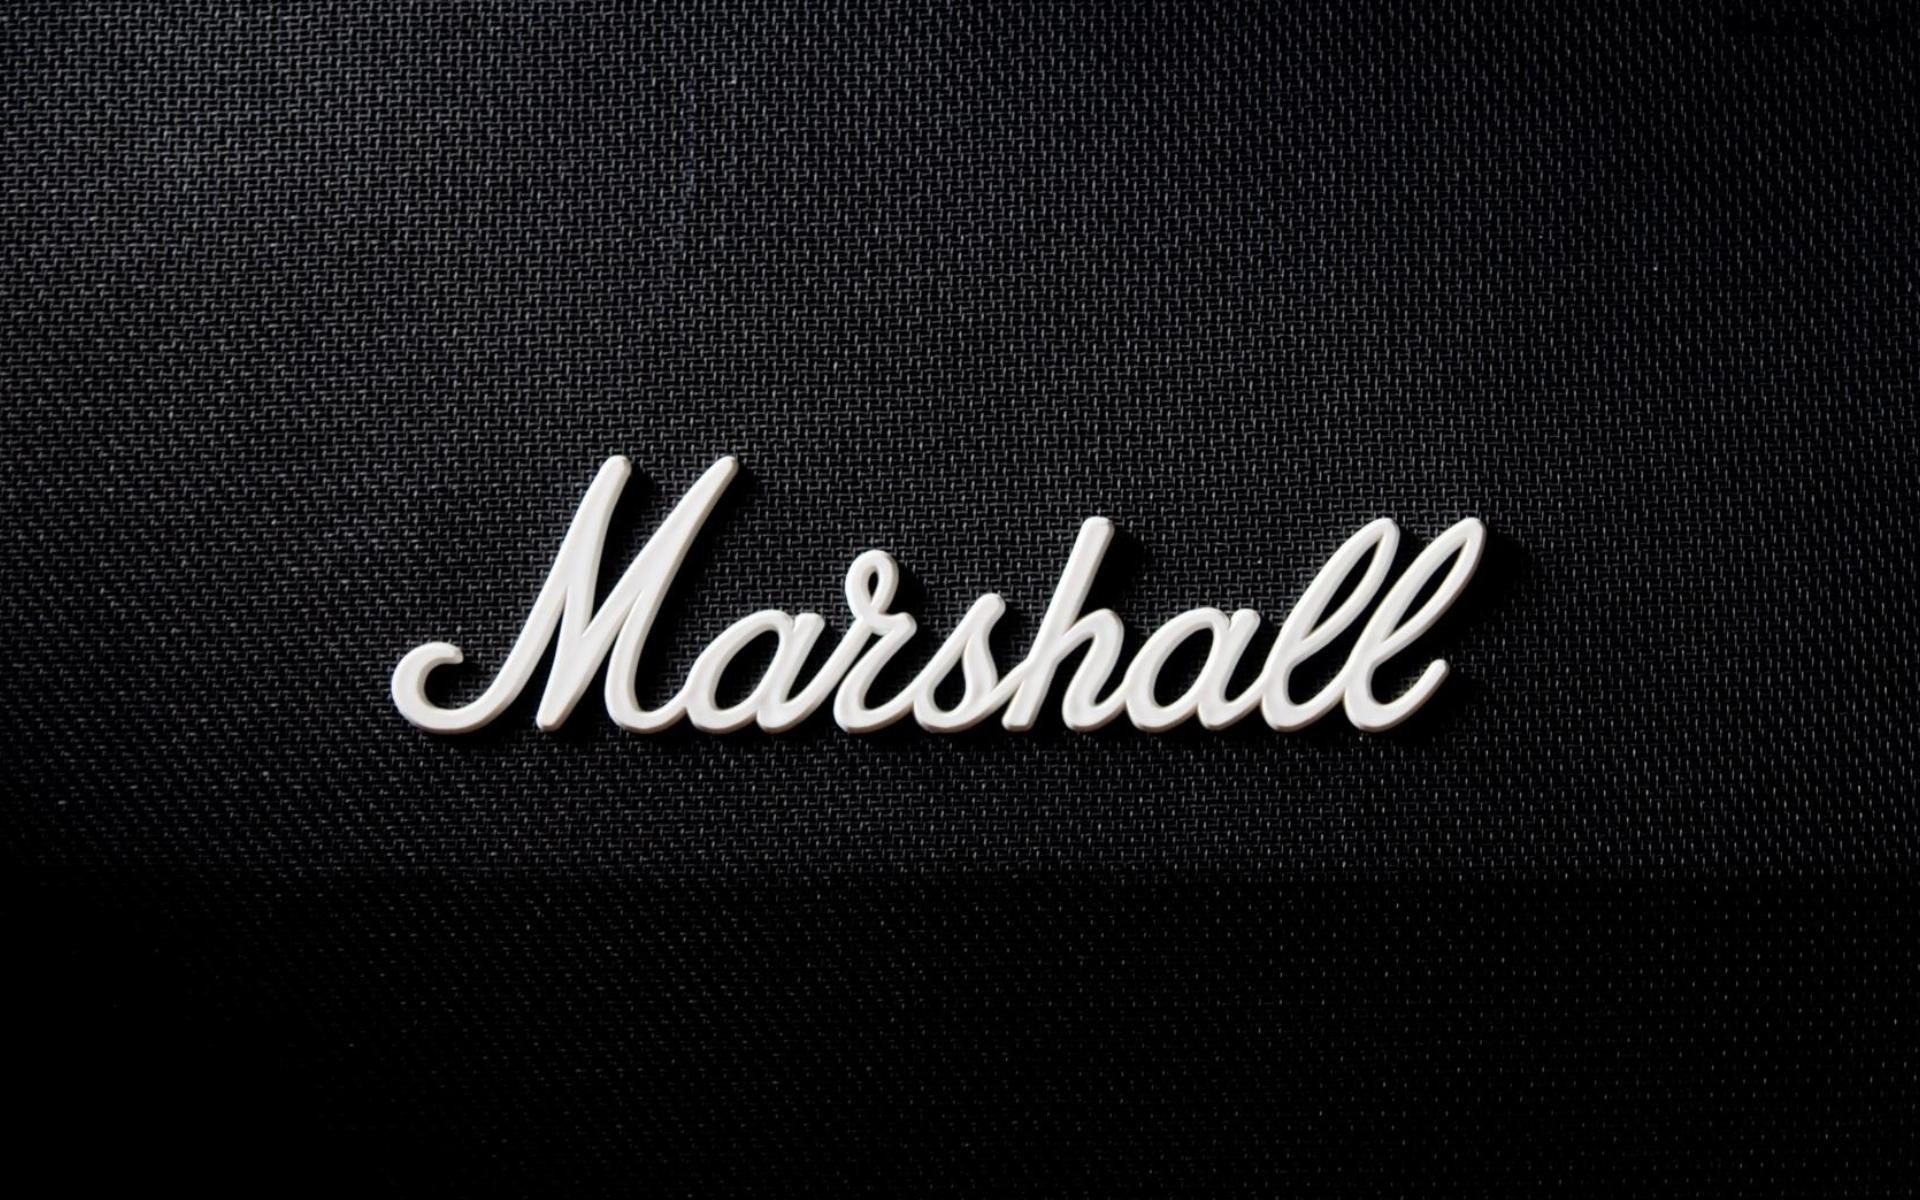 Descargar fondos de escritorio de Marshall HD